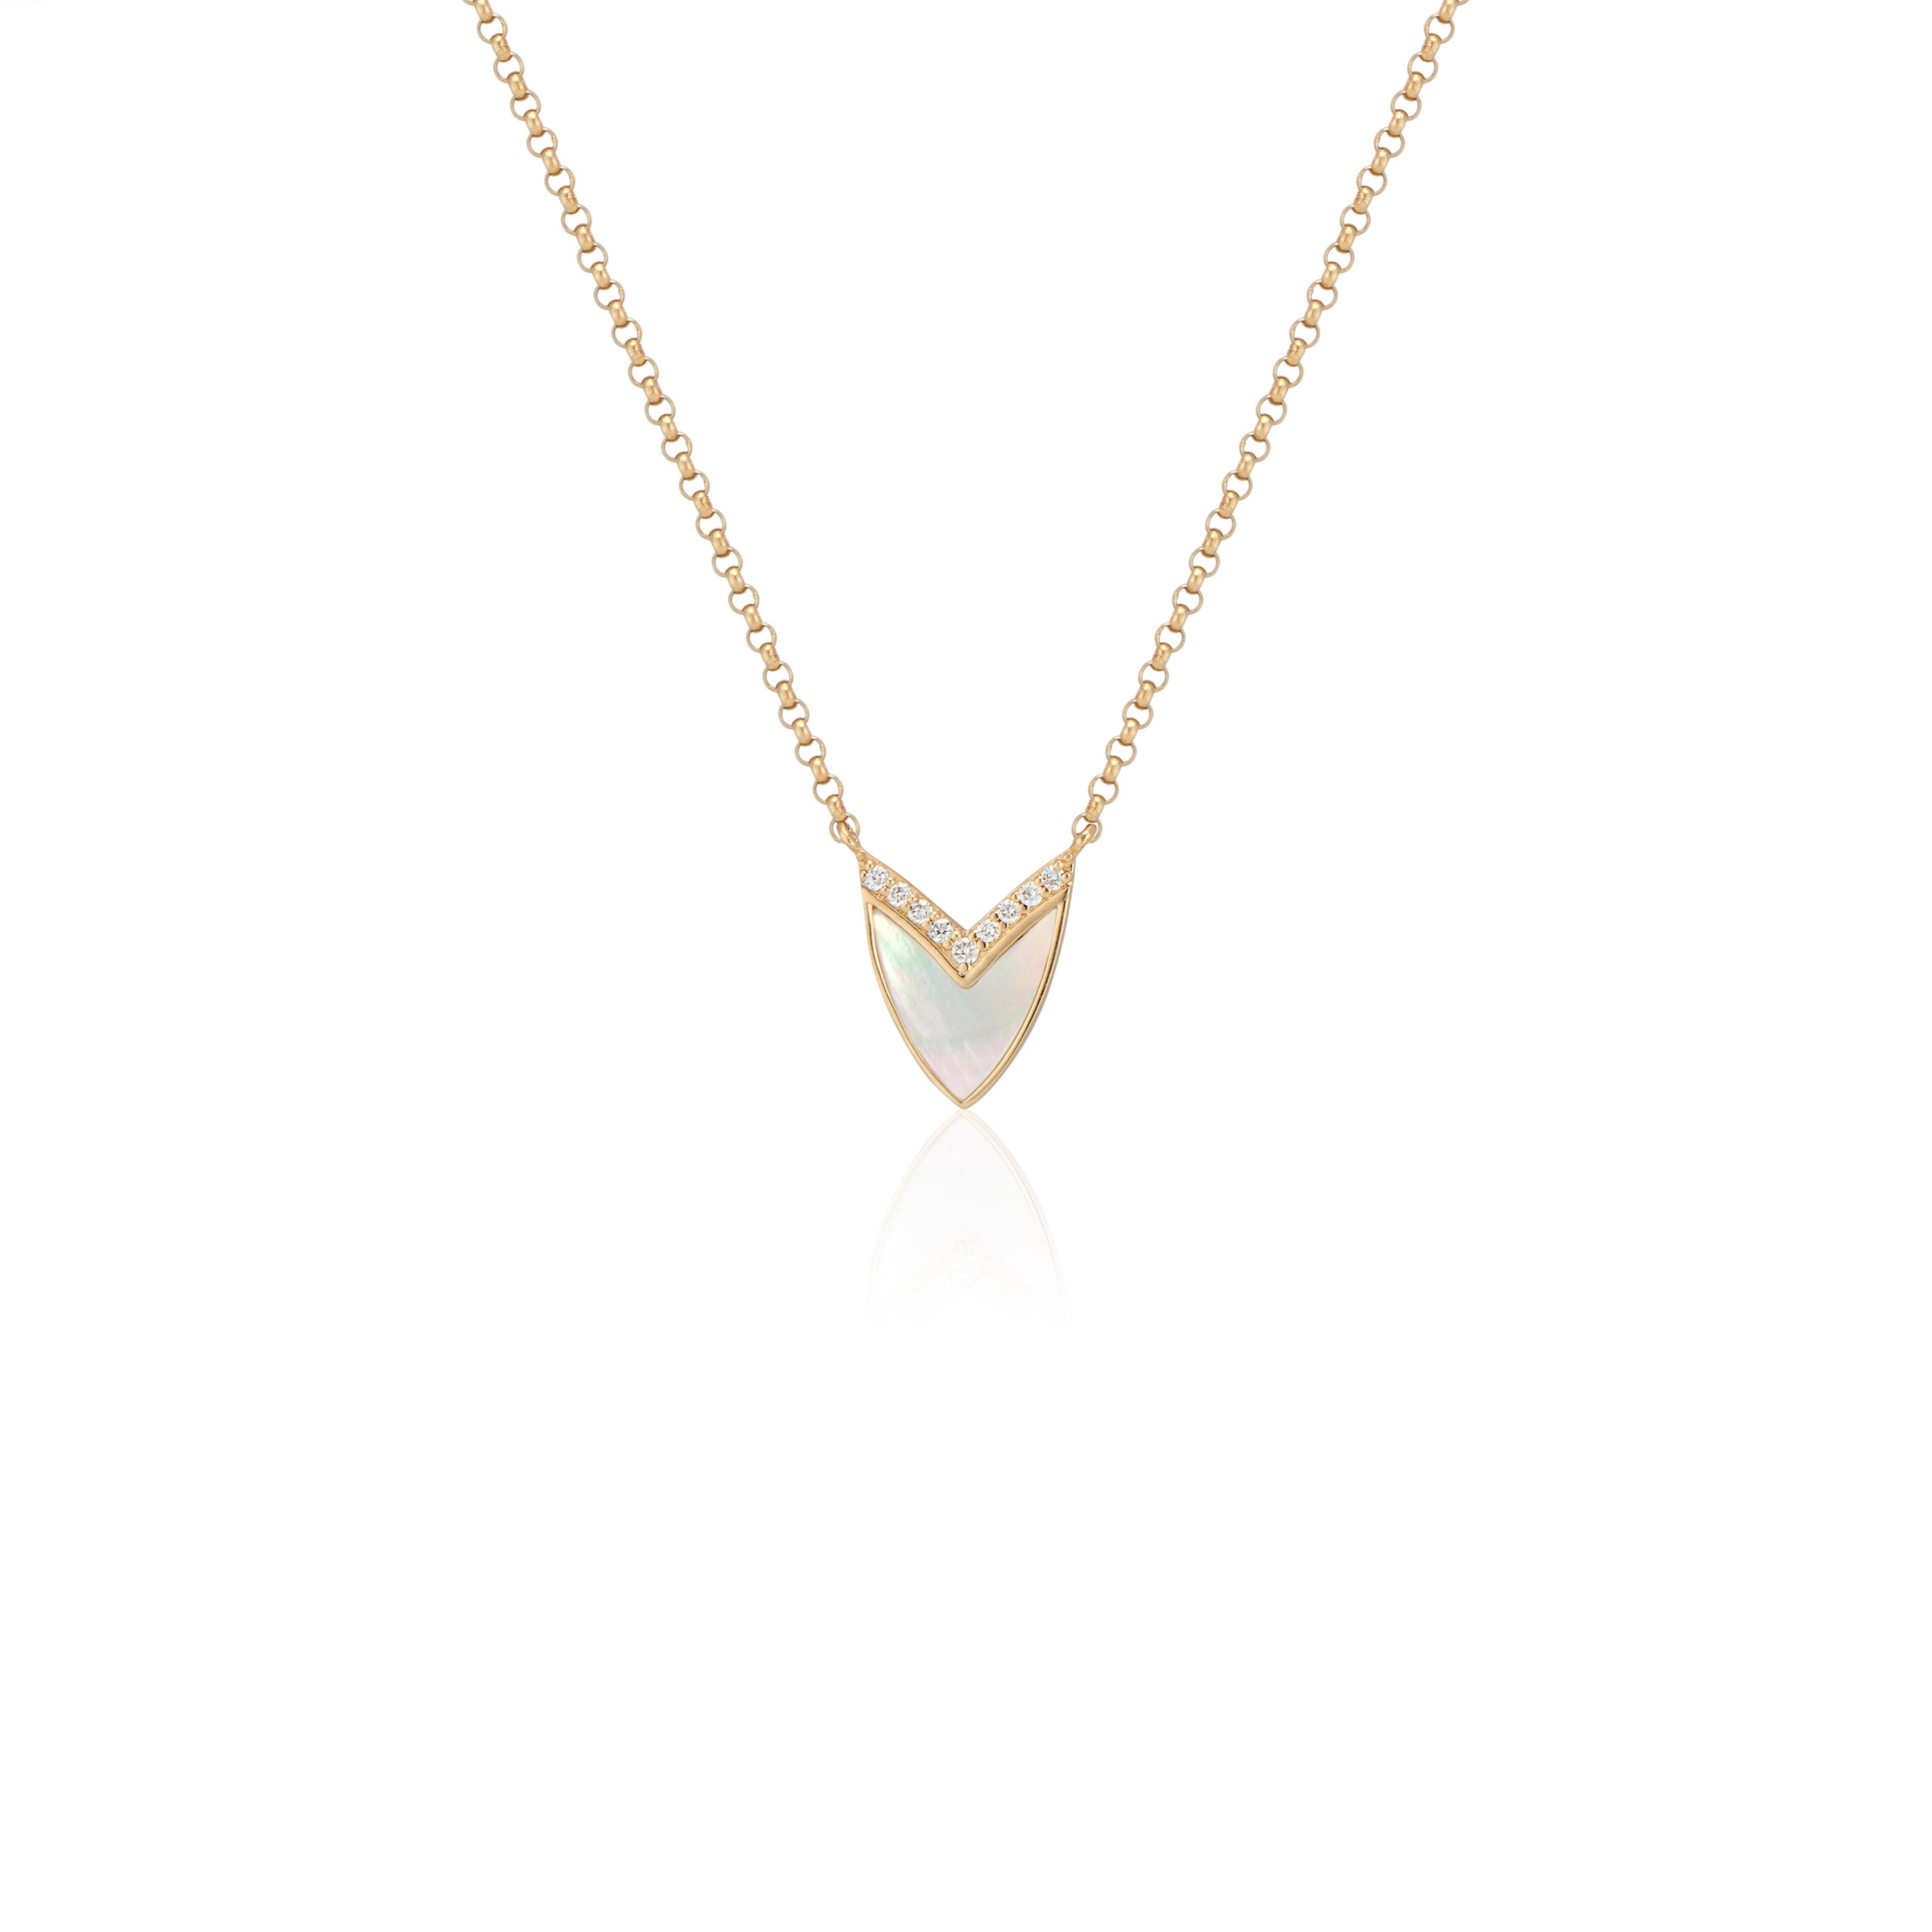 Die elegante Cubist Heart Necklace mit Perlmutt, Rubinen und Diamanten von Ri Noor verleiht jedem Outfit eine raffinierte Raffinesse. Der Anhänger ist von der Form eines Herzens inspiriert, das zu einer geometrischen Form abstrahiert und mit einer